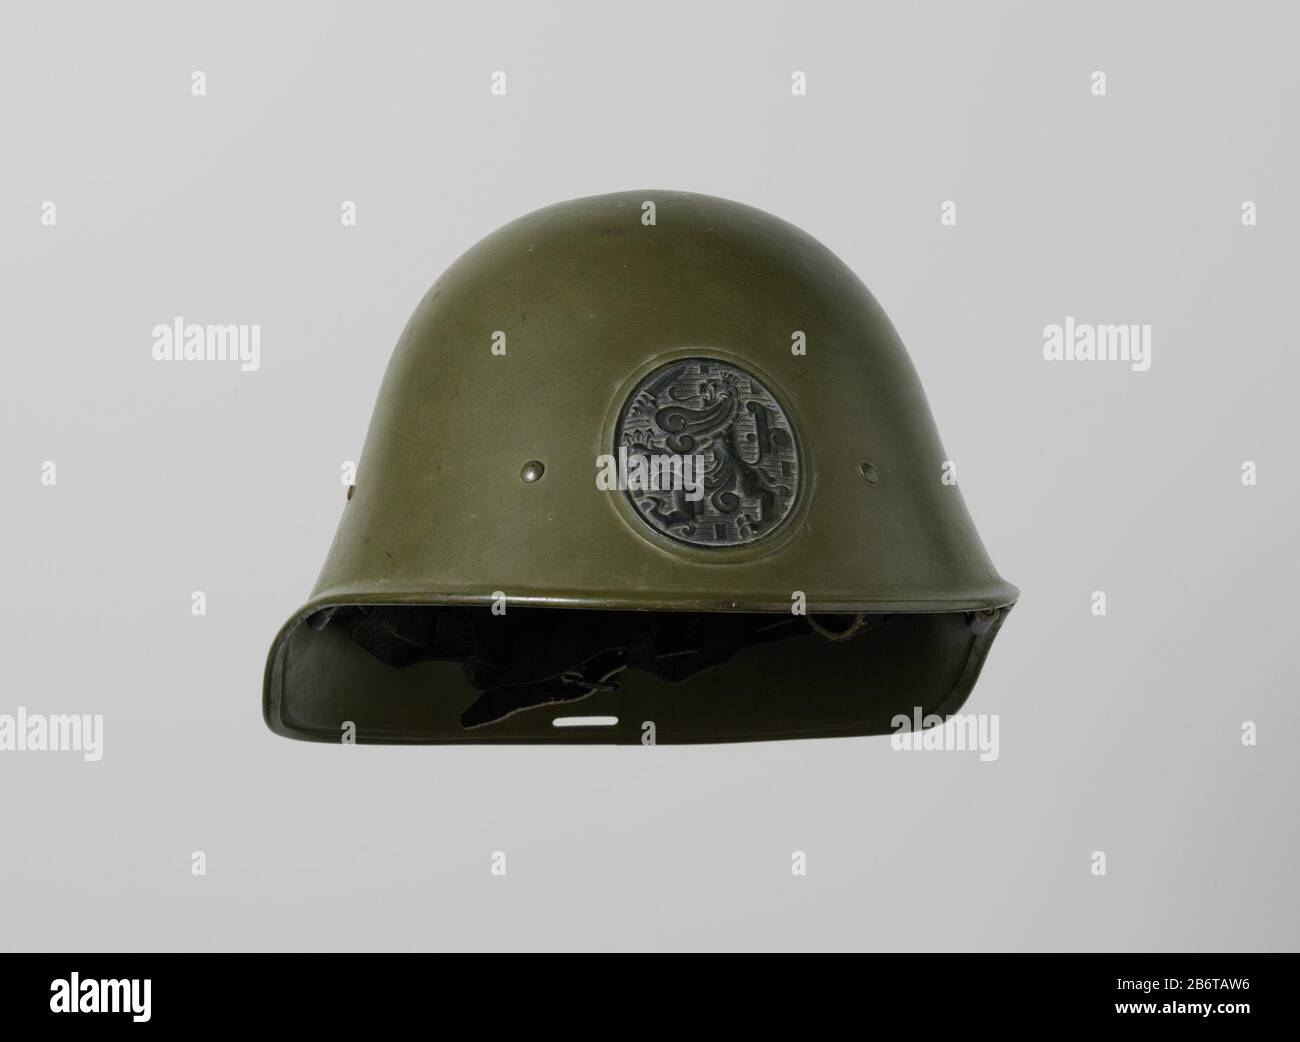 Helm van het Nederlandse leger, M 28 - 'Nieuw Model' Olijfgroene stalen helm  met in reliëf van gezwart koper het Rijkswapen met de Nederlandse leeuw.  Leren binnenwerk met gespen en viltkussens. Helmsoort: